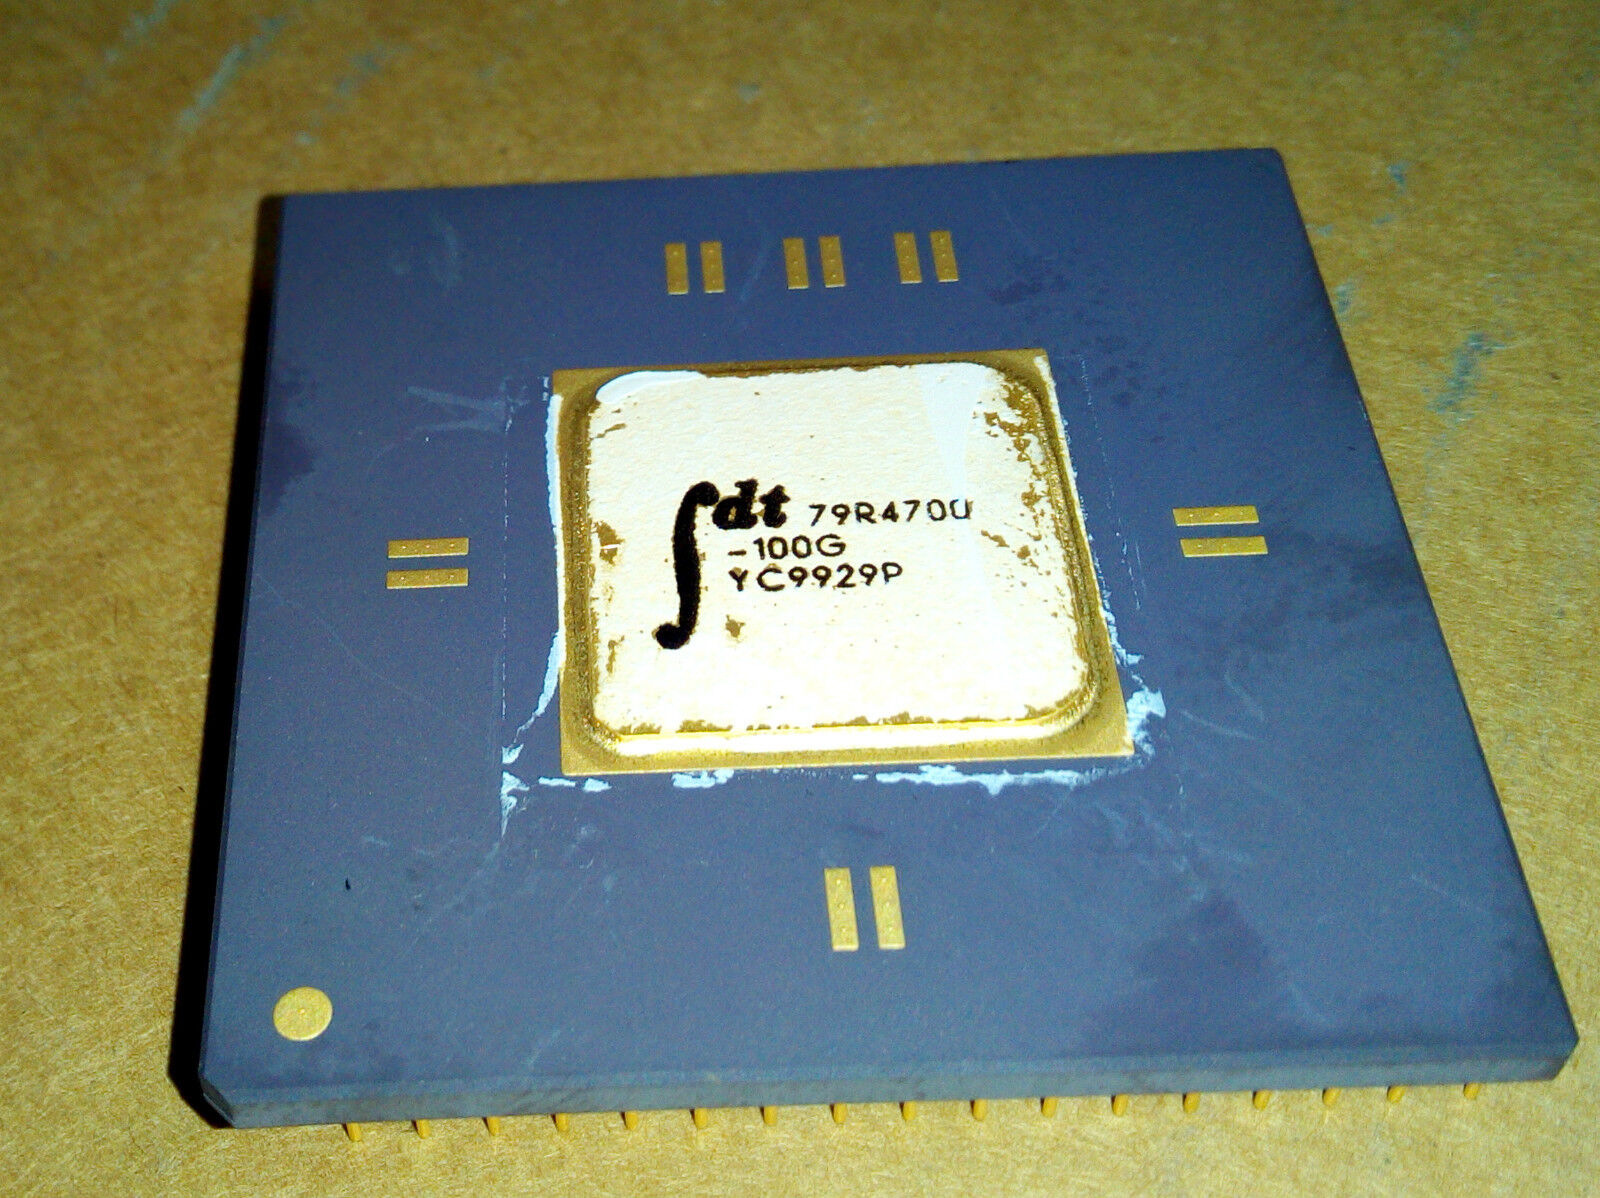 IDT 79R4700-100G 179-pin Ceramic PGA 100MHz 64-Bit RISC Processor